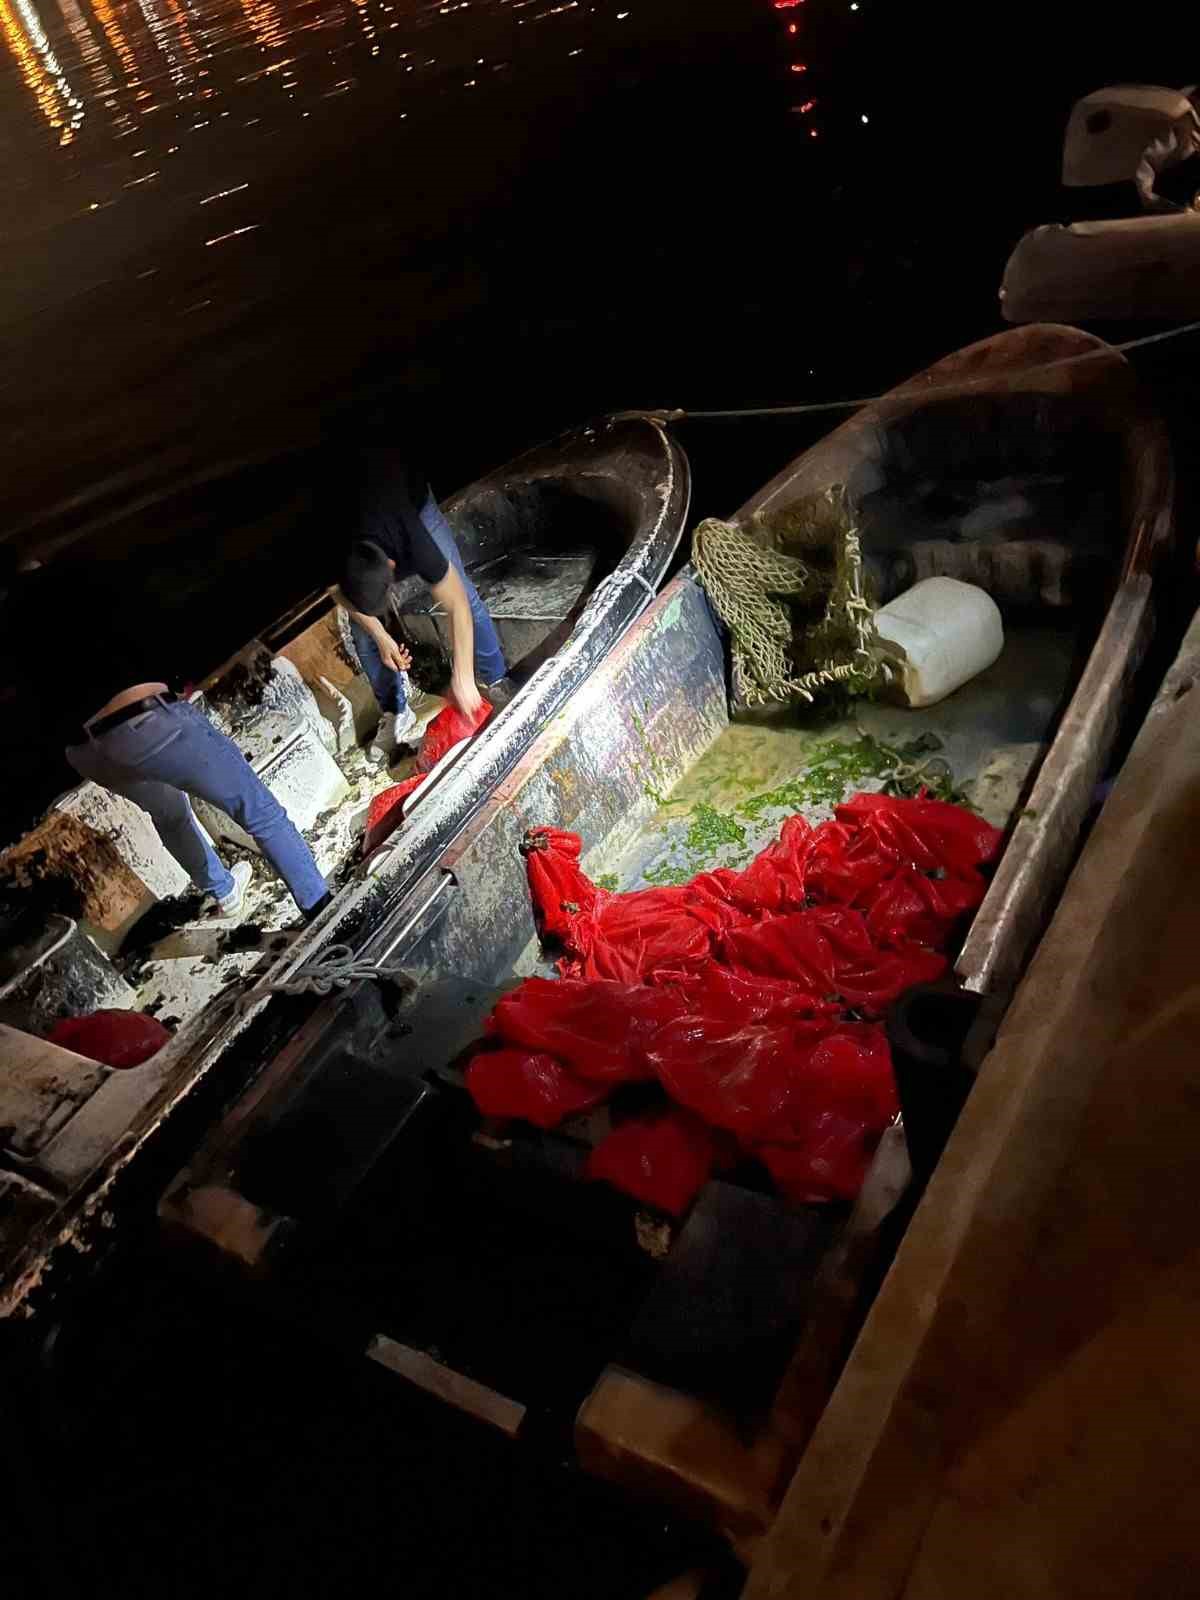 İstanbul’da 1 buçuk ton kaçak midye ele geçirildi
